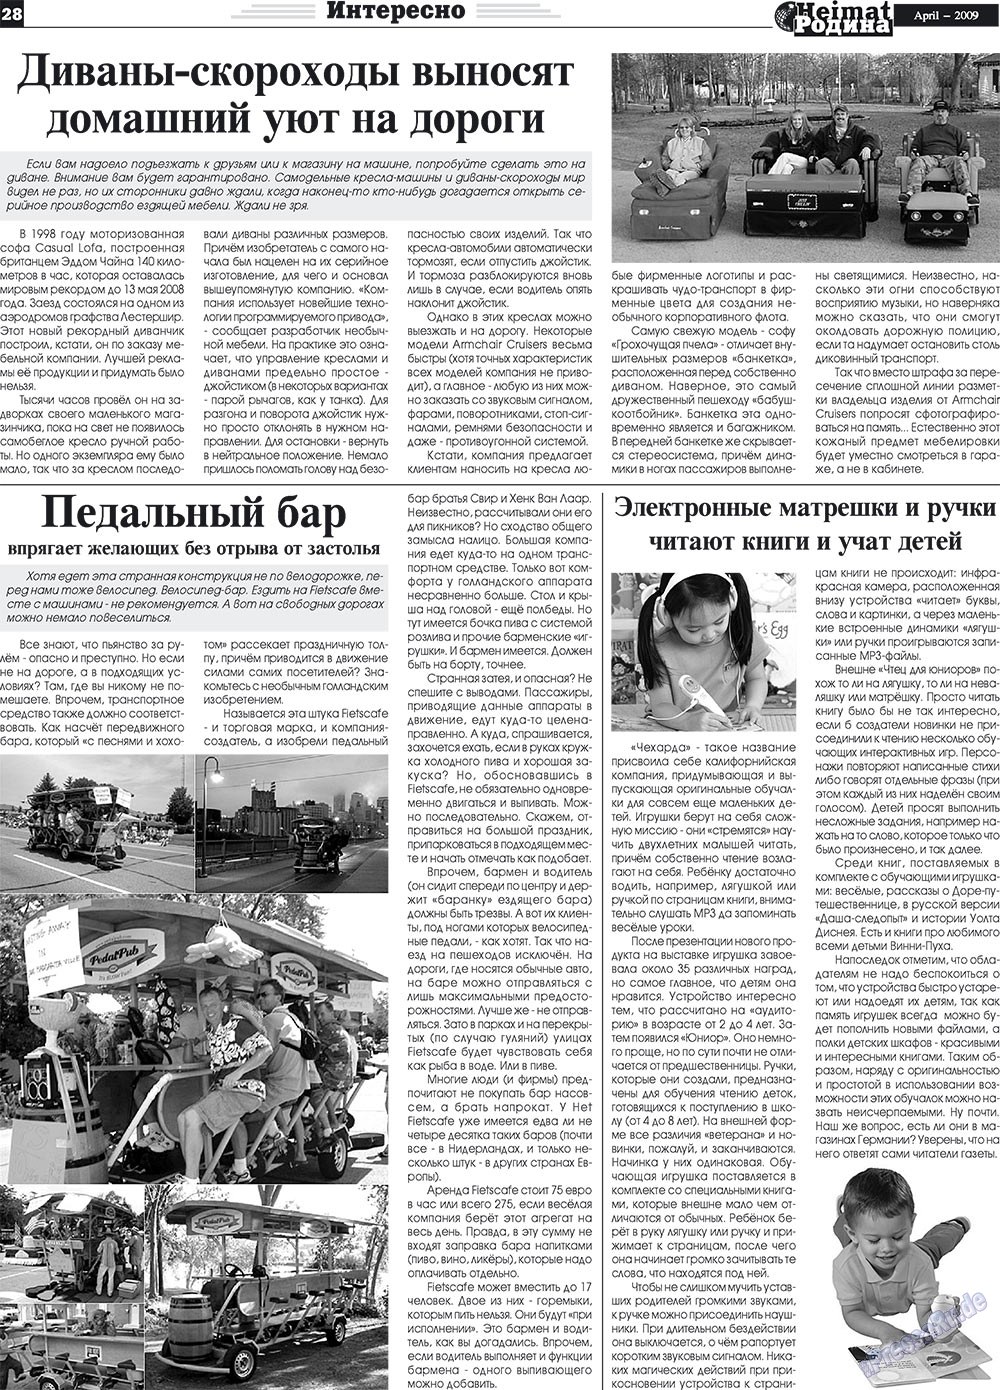 Heimat-Родина (газета). 2009 год, номер 4, стр. 28